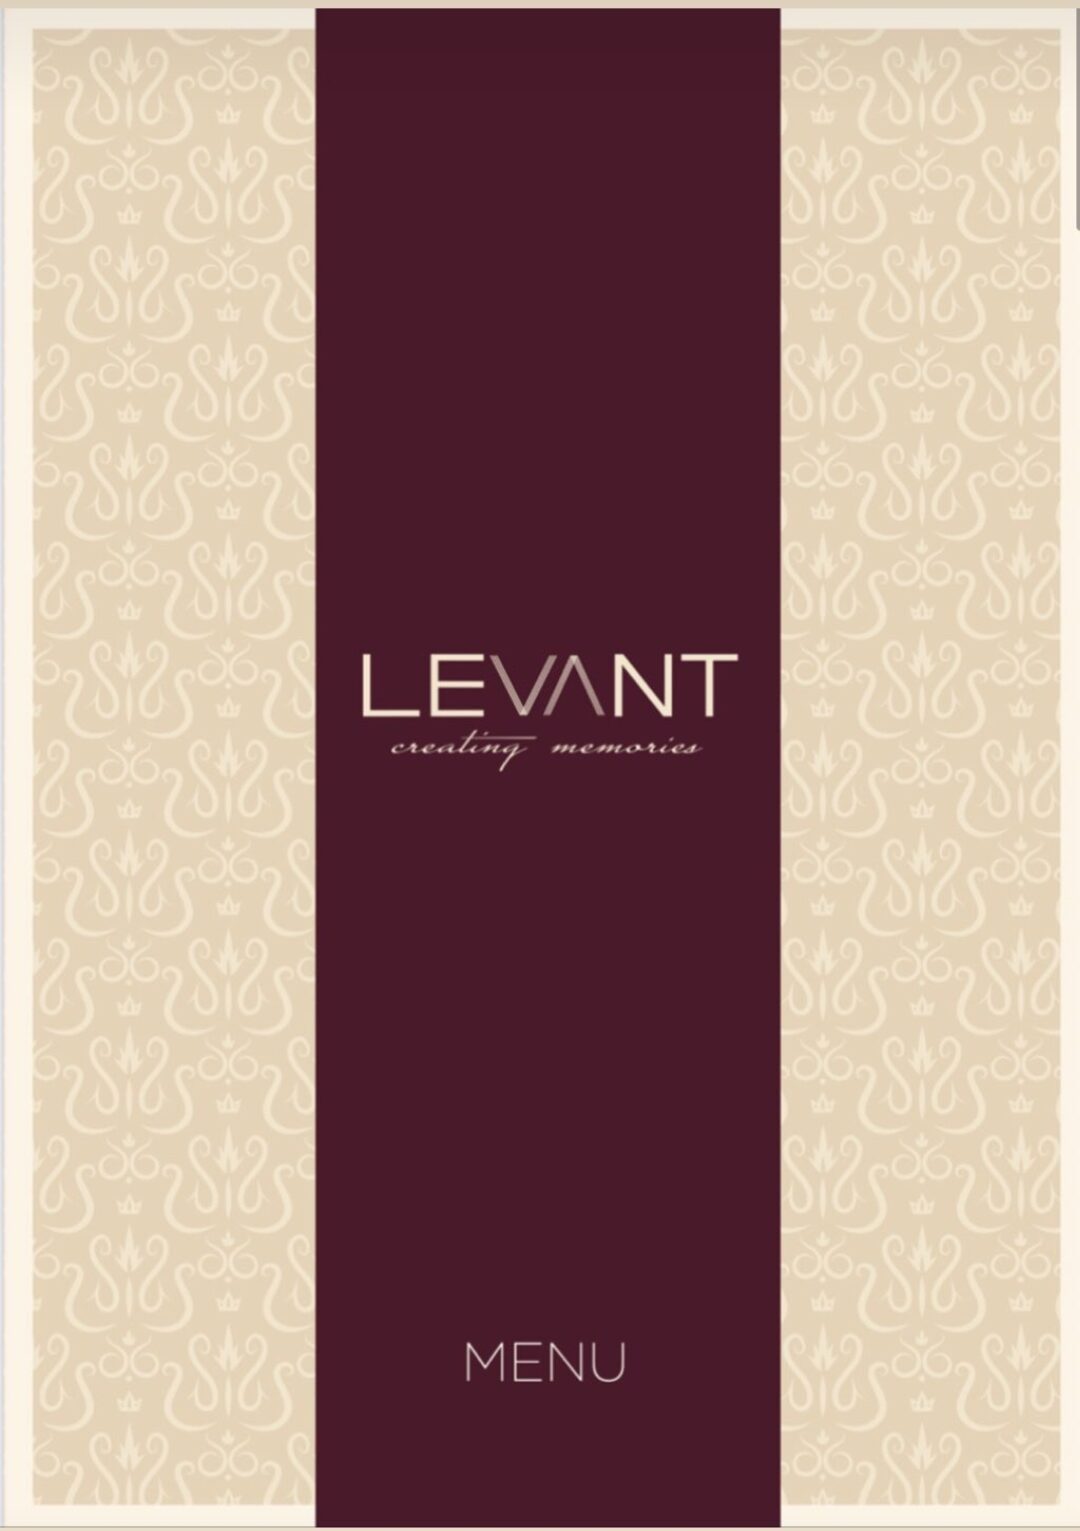 Levant restaurant menu front page